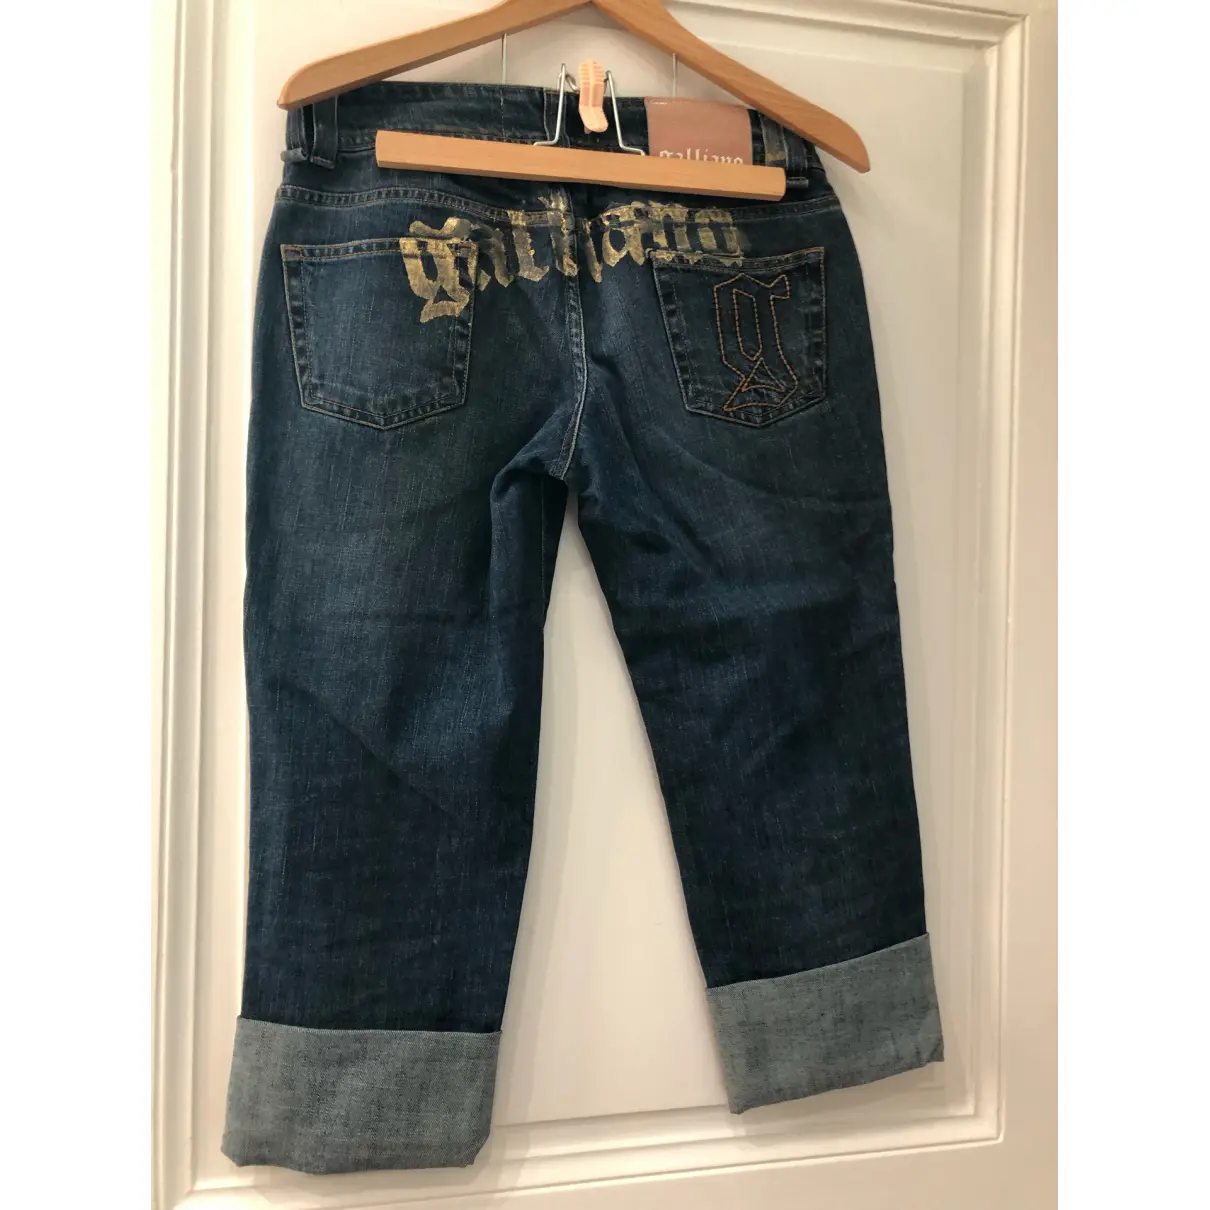 Buy Galliano Large pants online - Vintage